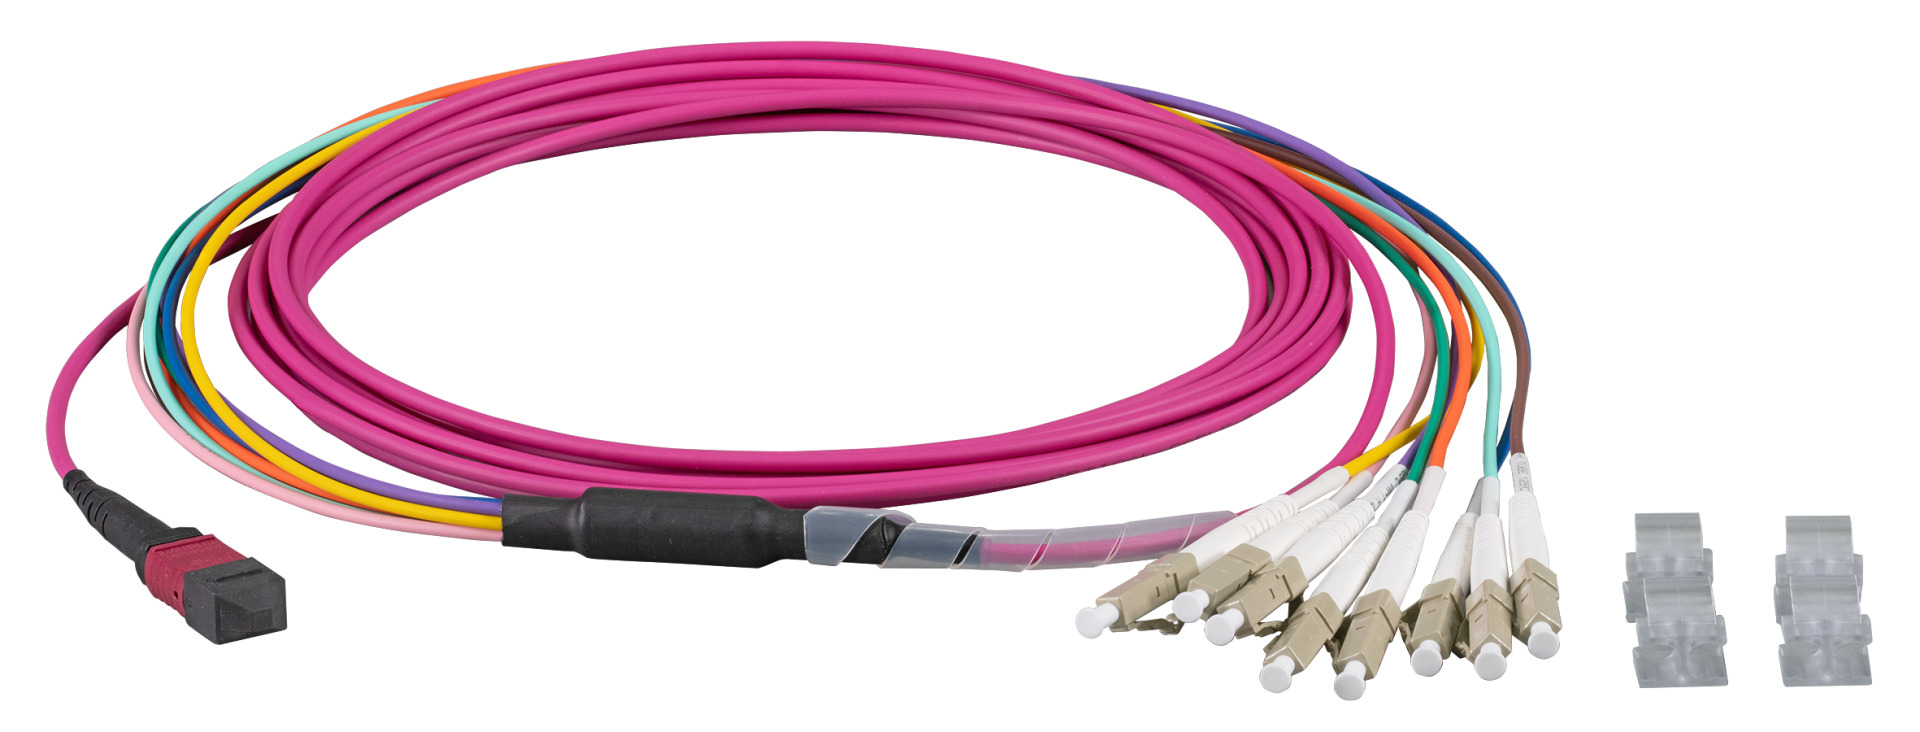 MTP®-F/LC 8-fiber patch cable OM4, LSZH erica-violet, 10m